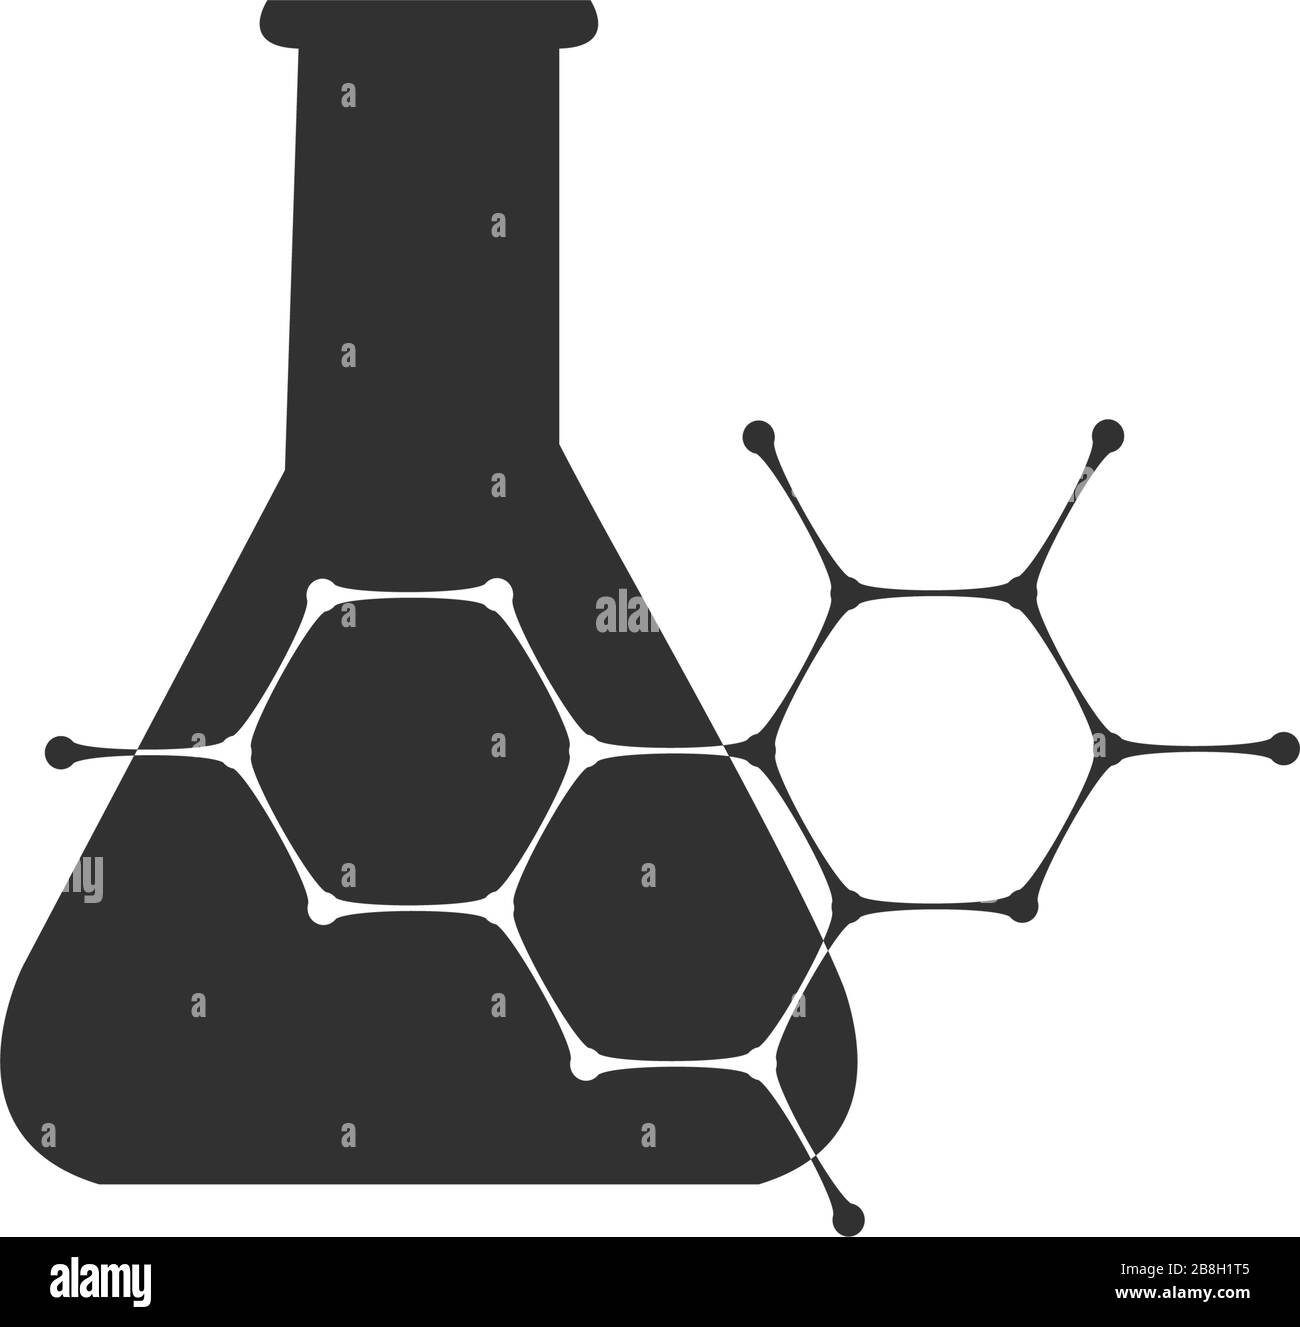 Laborchemikalien, Reagenzglassymbol, Symbol für Laborkolben. Darstellung des Stock-Vektors auf weißem Hintergrund isoliert. Stock Vektor